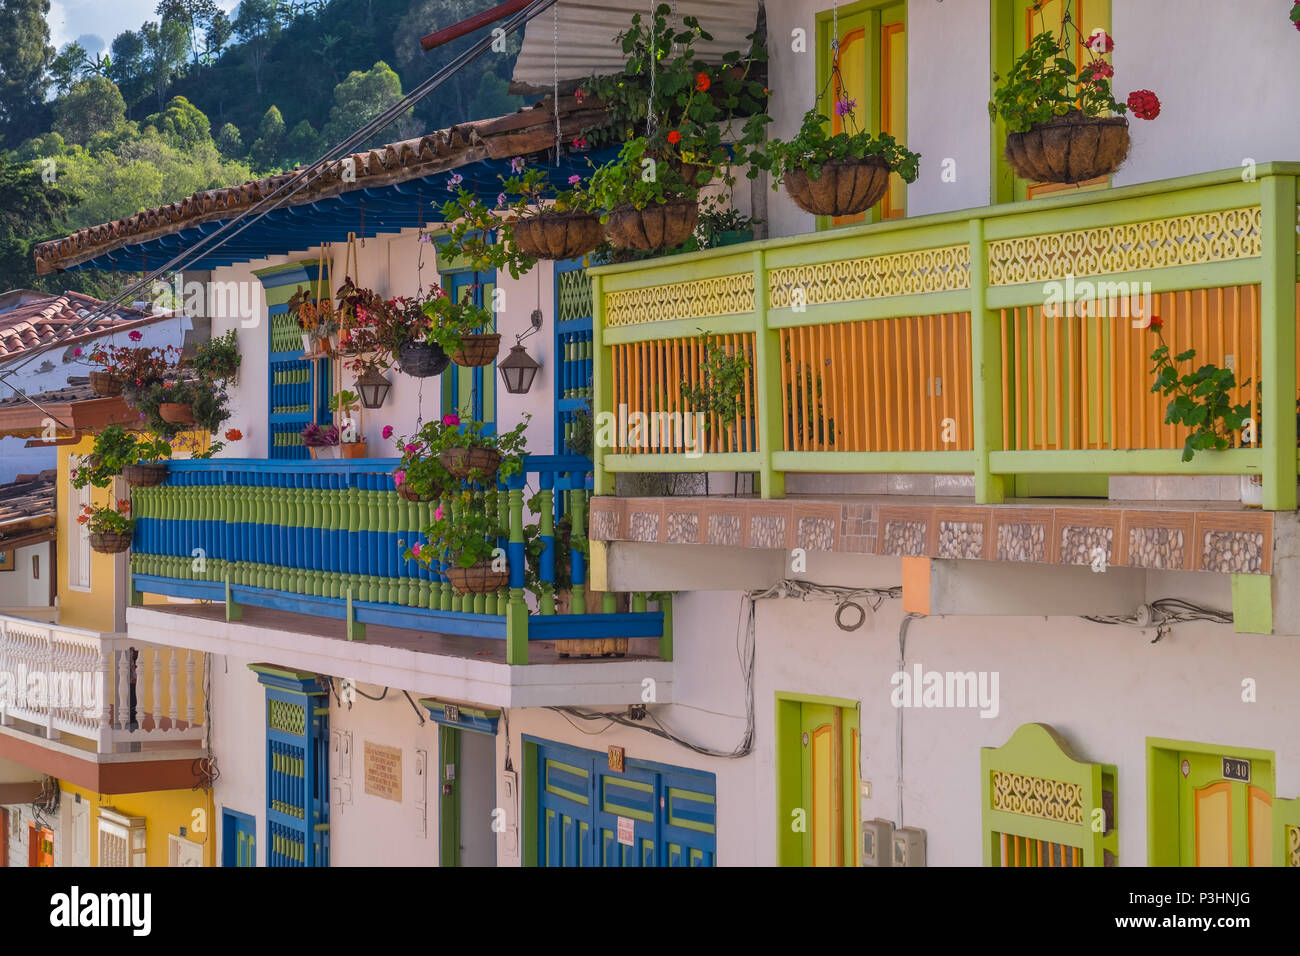 Tipica casa colorata, architettura per le strade di Jericó, Antioquia, Colombia Foto Stock